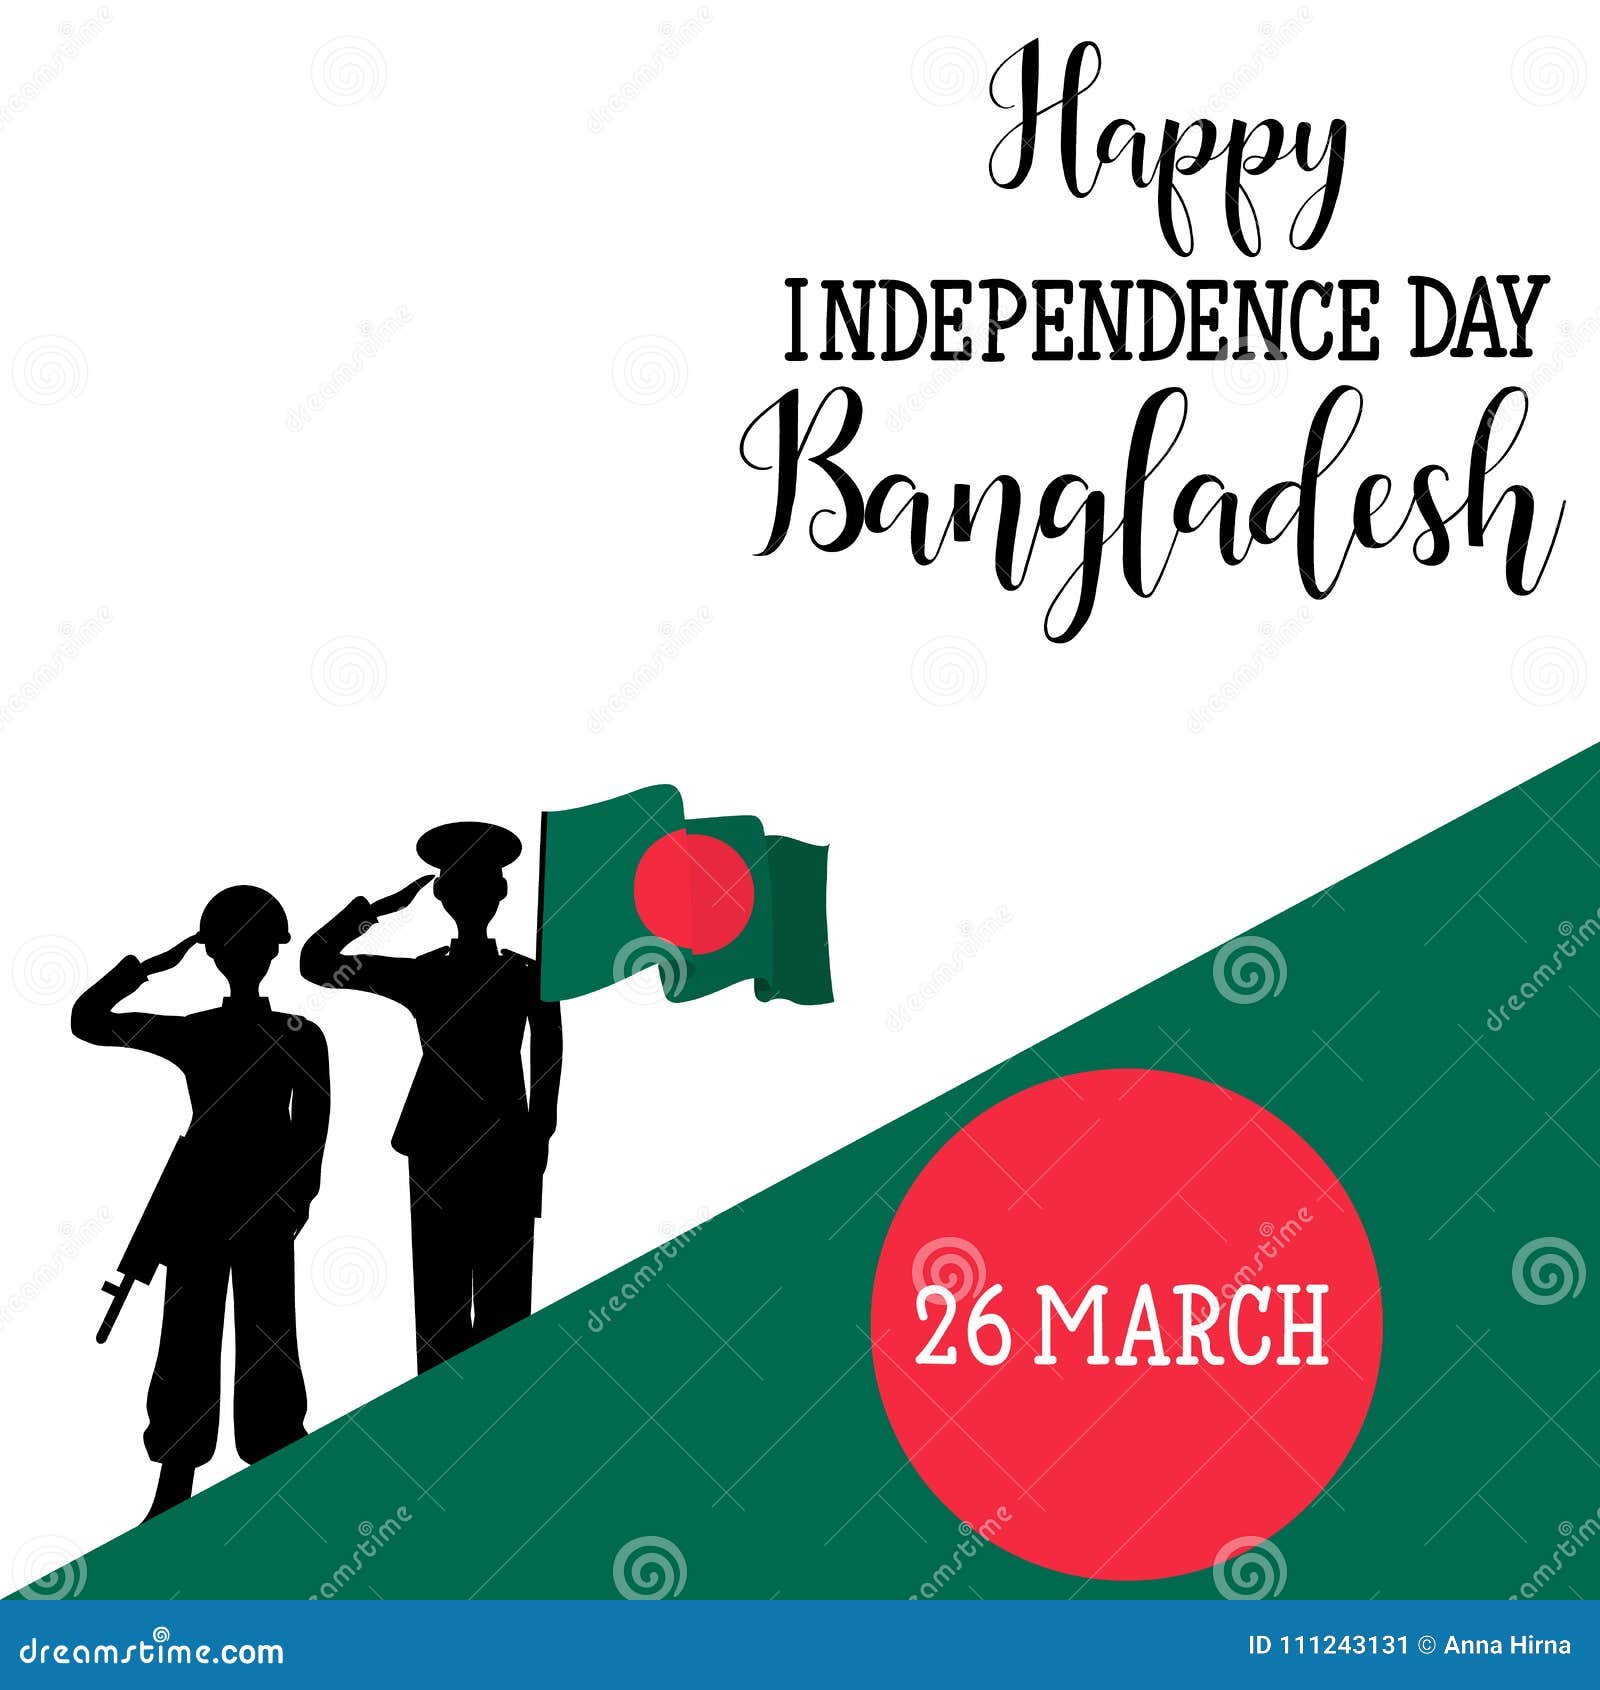 Mỗi người dân Bangladesh đều cảm nhận rõ ràng sự quan trọng của ngày độc lập. Đó chỉ không phải là một ngày kỉ niệm mà là một sự kiện lịch sử, là niềm tự hào và hy vọng cho một tương lai vĩ đại hơn. Xem những hình ảnh liên quan để hiểu rõ hơn về ngày độc lập Bangladesh và tình yêu đất nước mà người dân nơi đây dành cho nó.